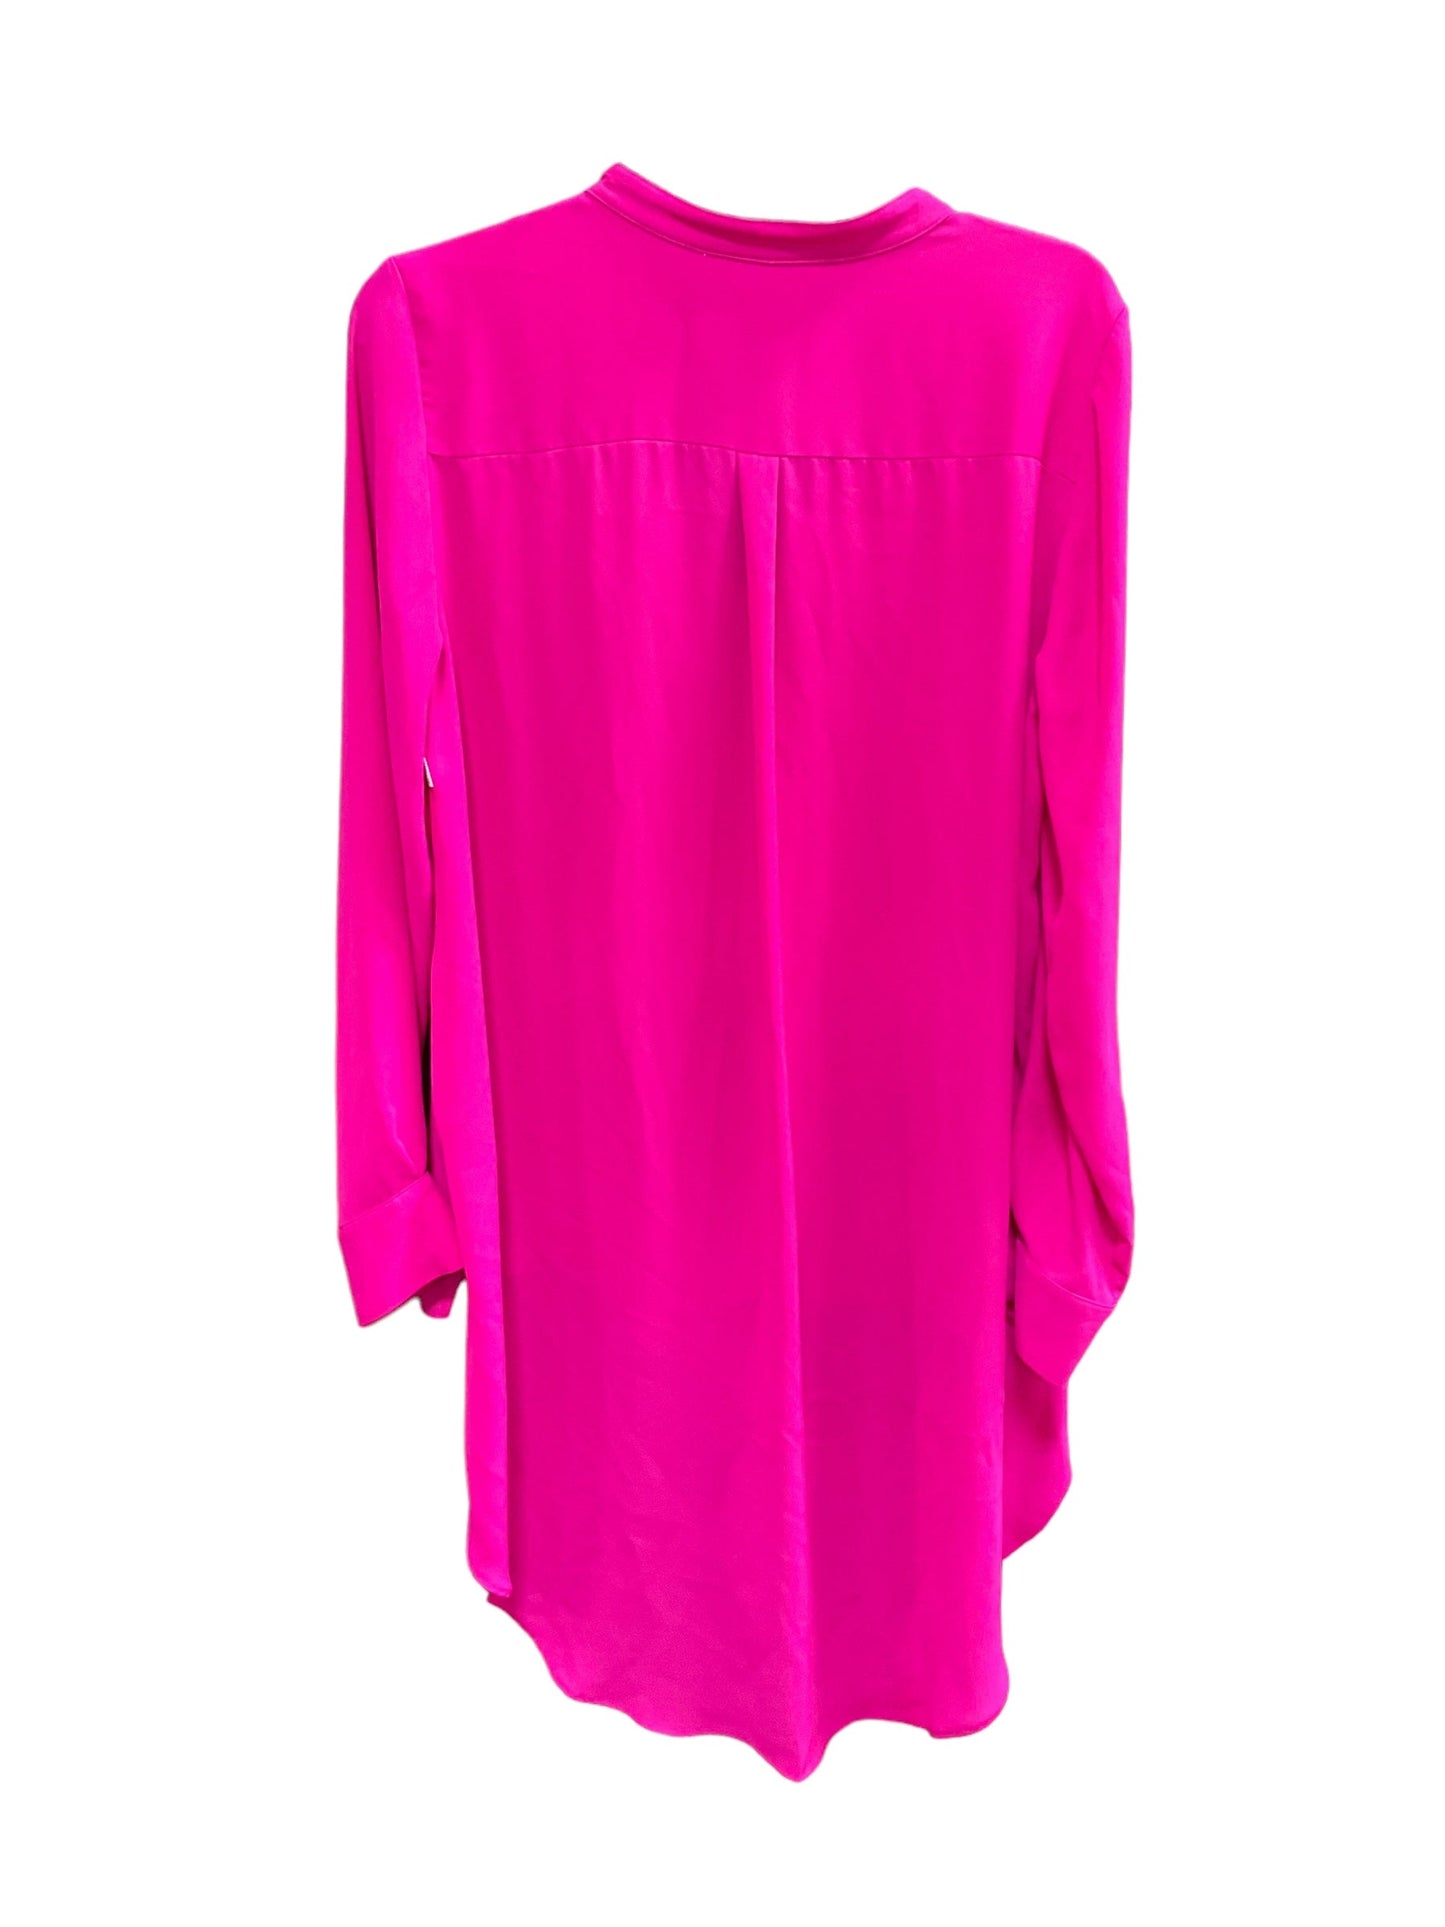 Pink Top Long Sleeve Peter Nygard, Size 10